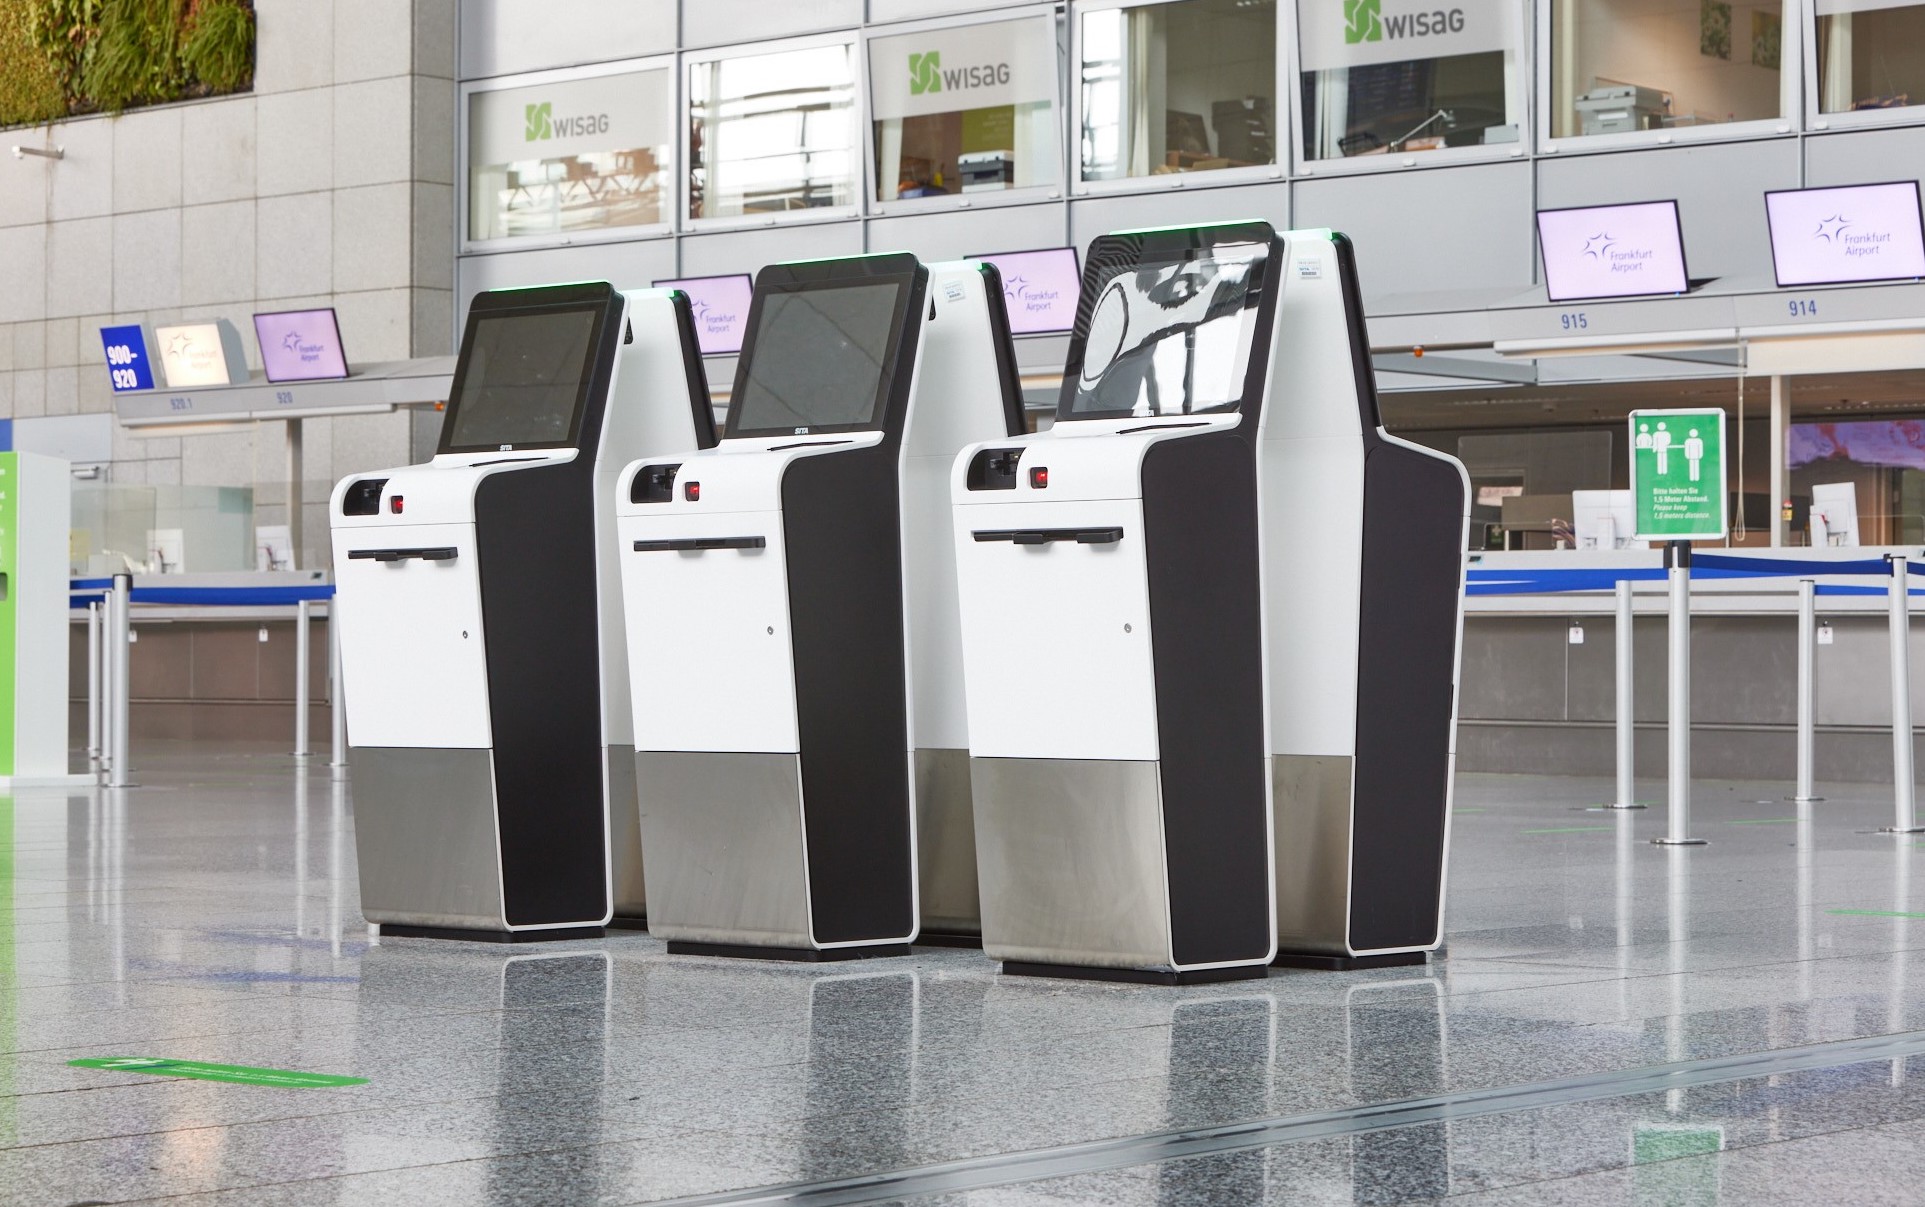 SITA trasforma l'Aeroporto di Francoforte con i chioschi biometrici